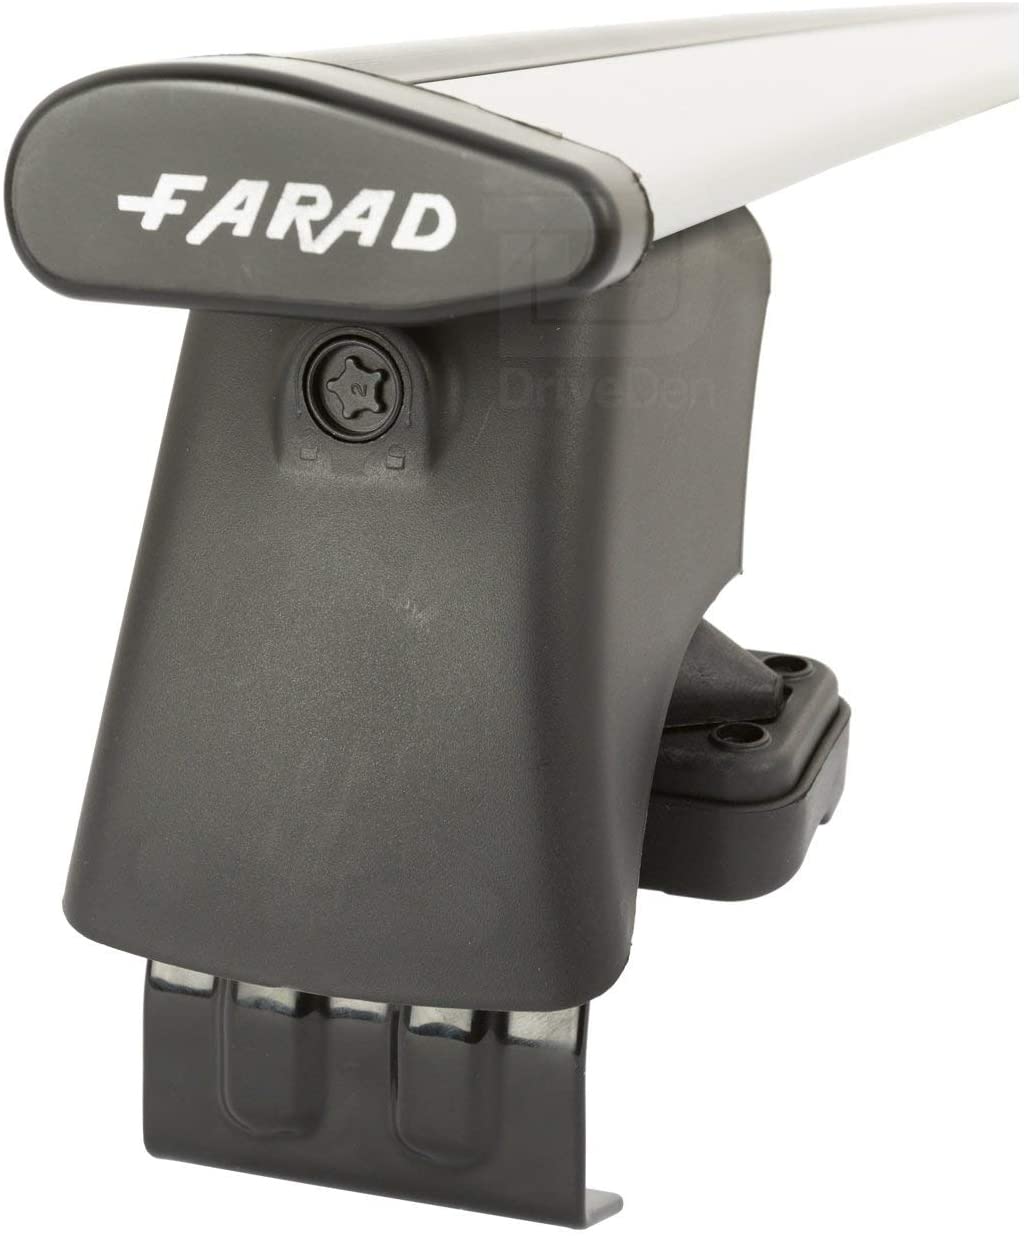 FARAD-Kit H2 per barre portatutto - Seat Ibiza 2002-2007 (senza corrimano)